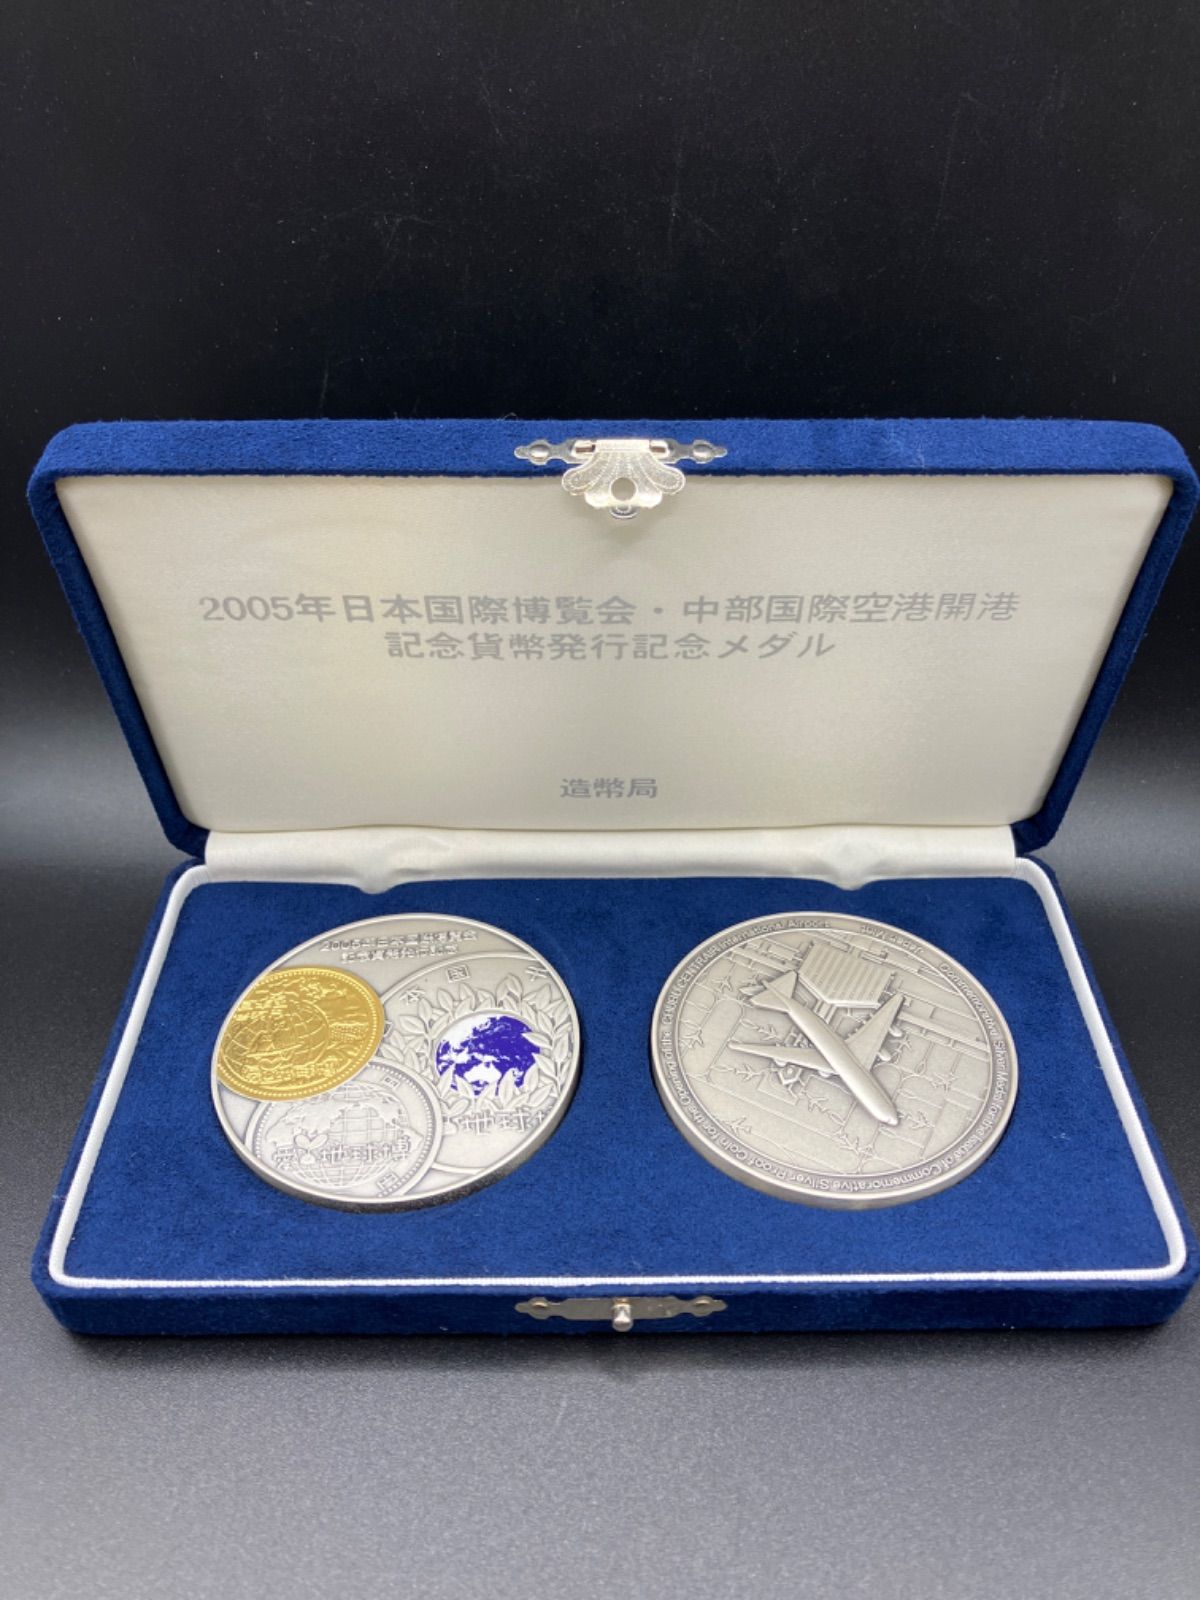 中部国際空港開港記念貨幣発行記念メダル 造幣局 純銀製